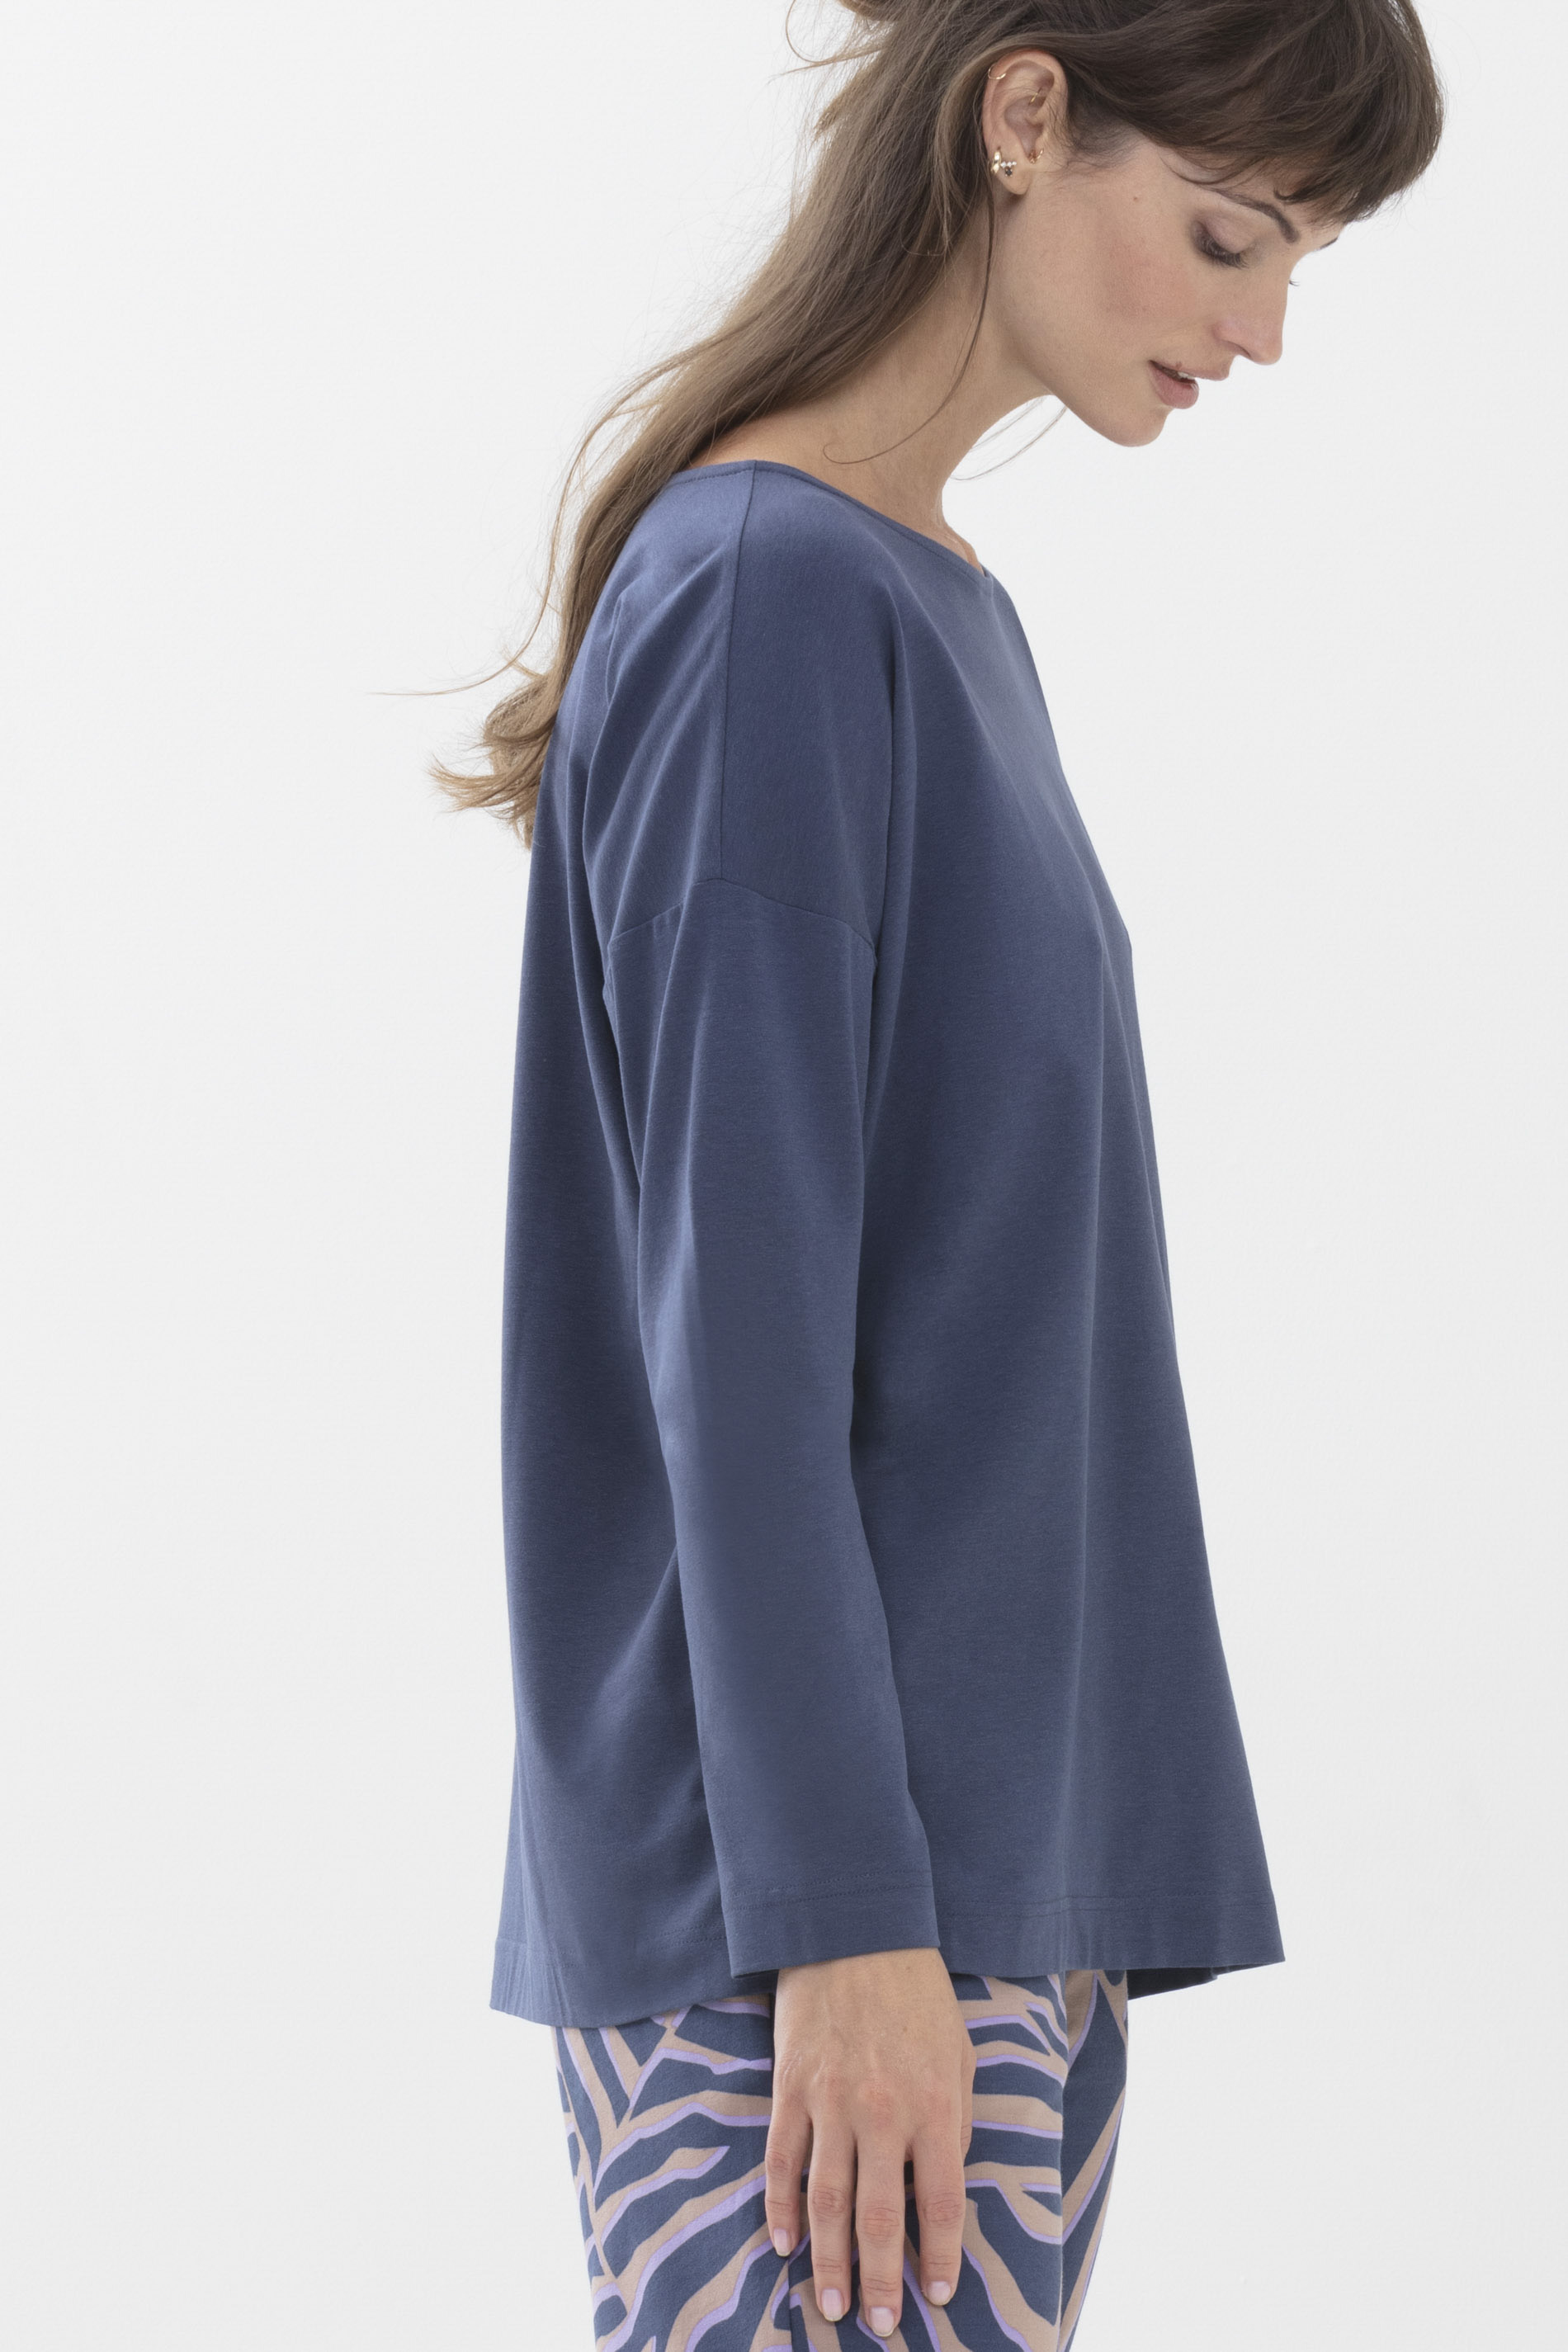 Langarm-Shirt New Blue Serie Aya Detailansicht 02 | mey®